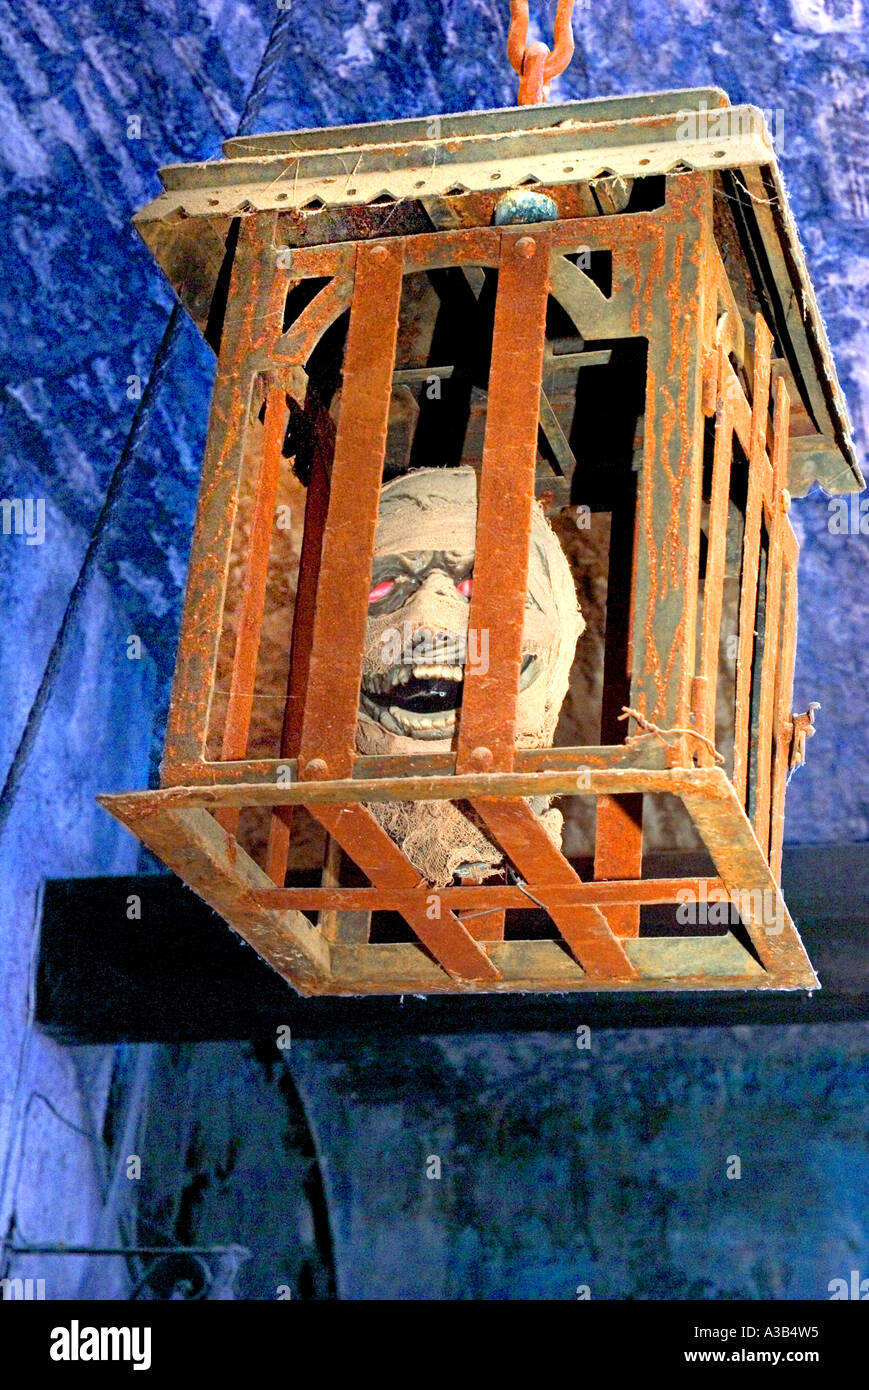 Fahren Sie in einem Käfig an der Decke eine Folterkammer im Museum der Inquisition Guanajuato Mexiko Stockfoto